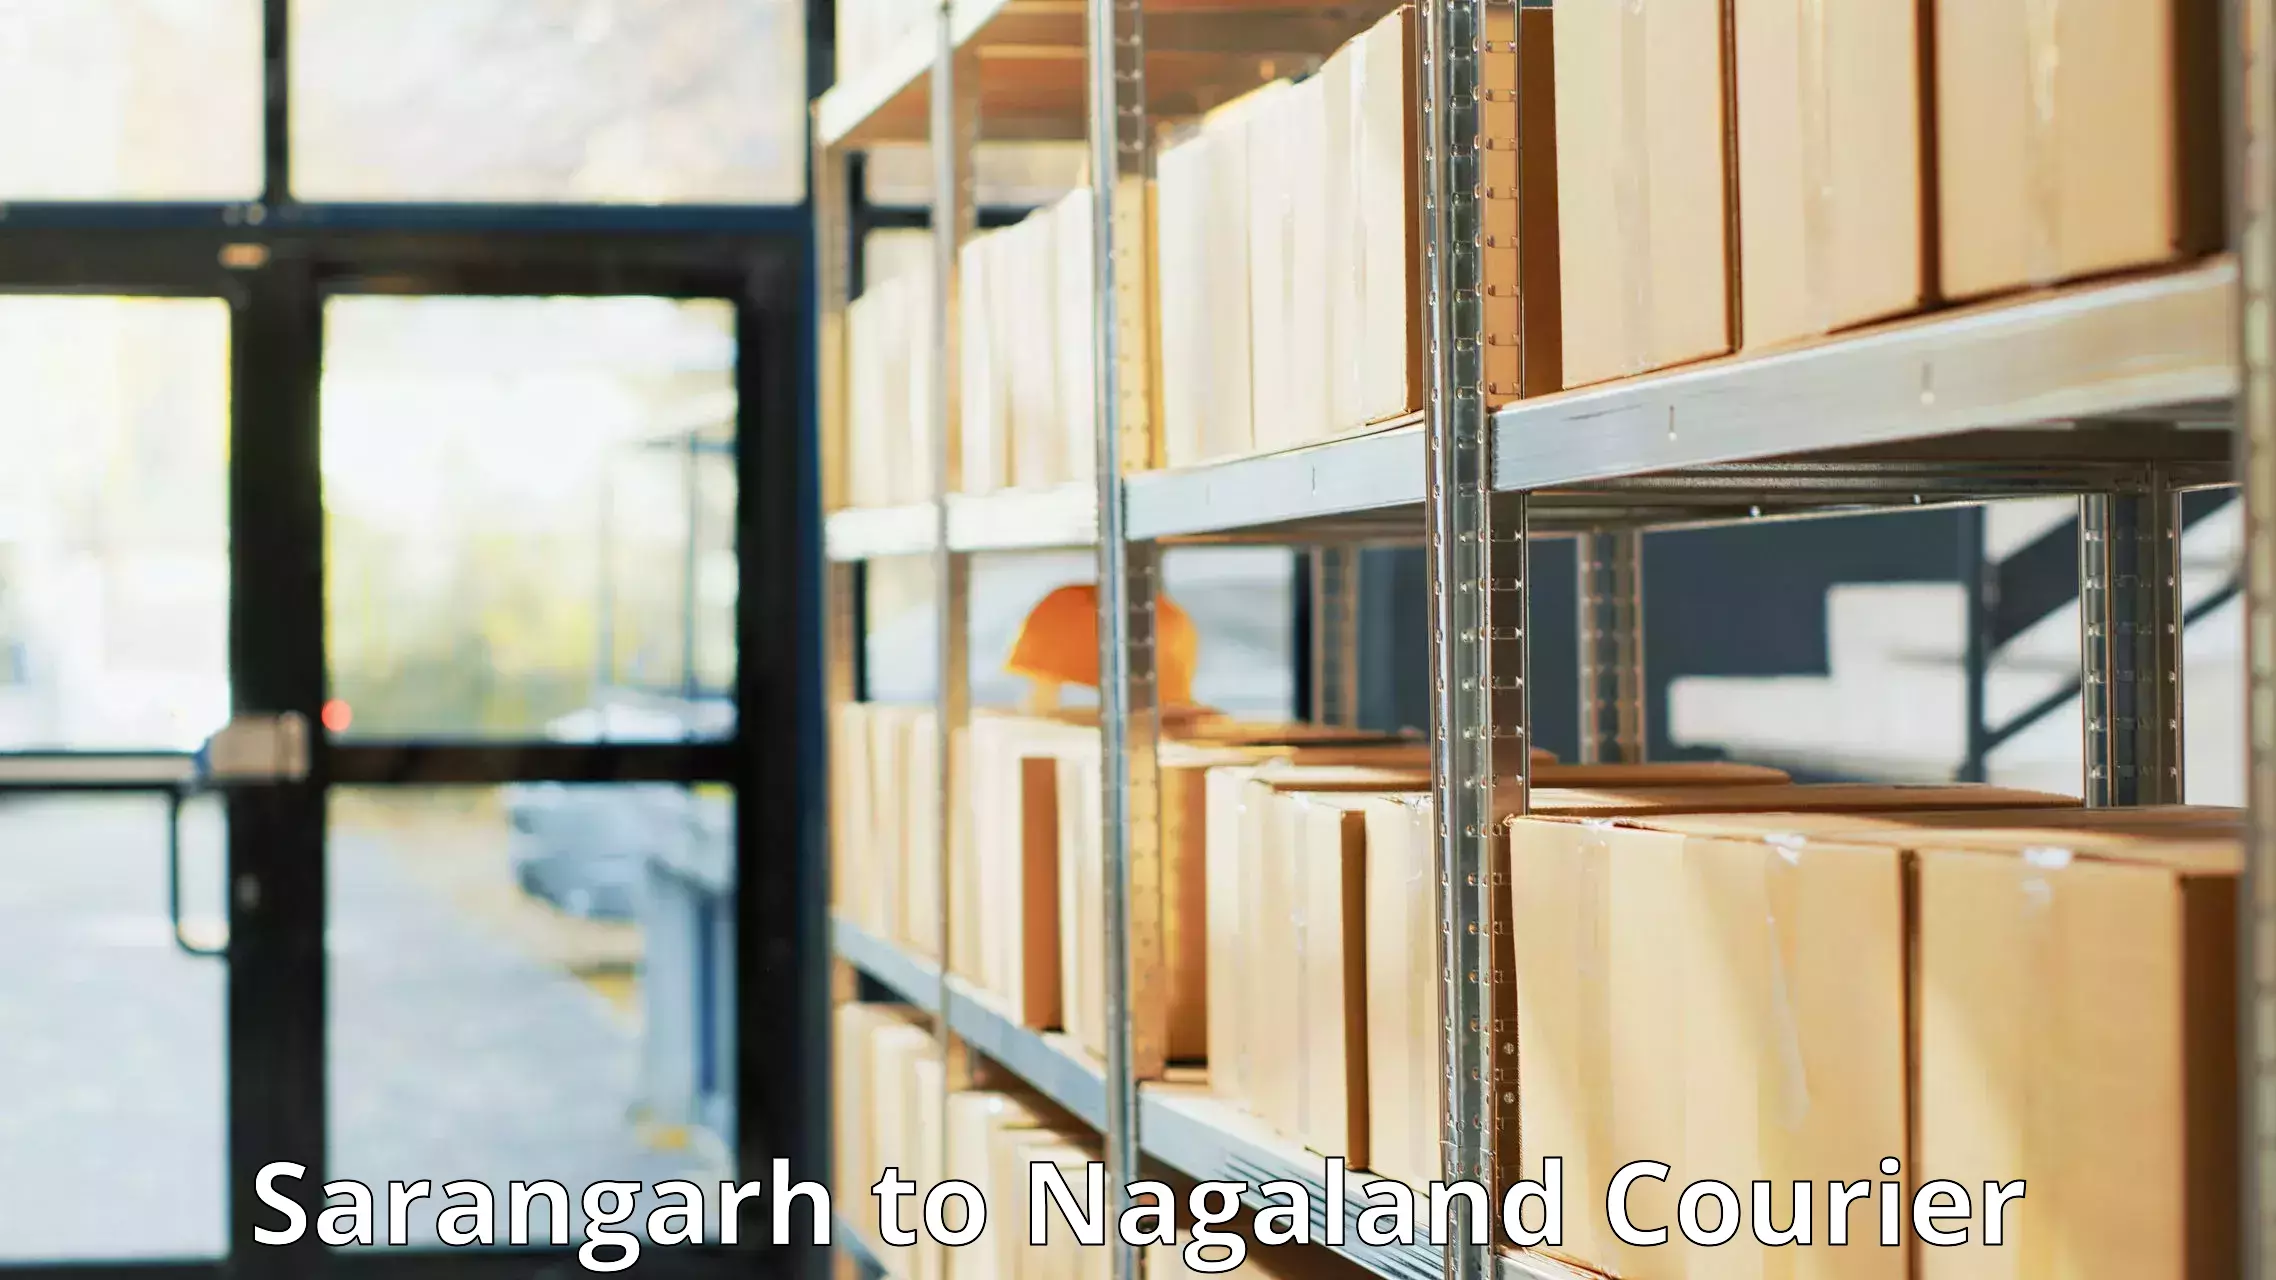 Efficient freight service Sarangarh to Nagaland